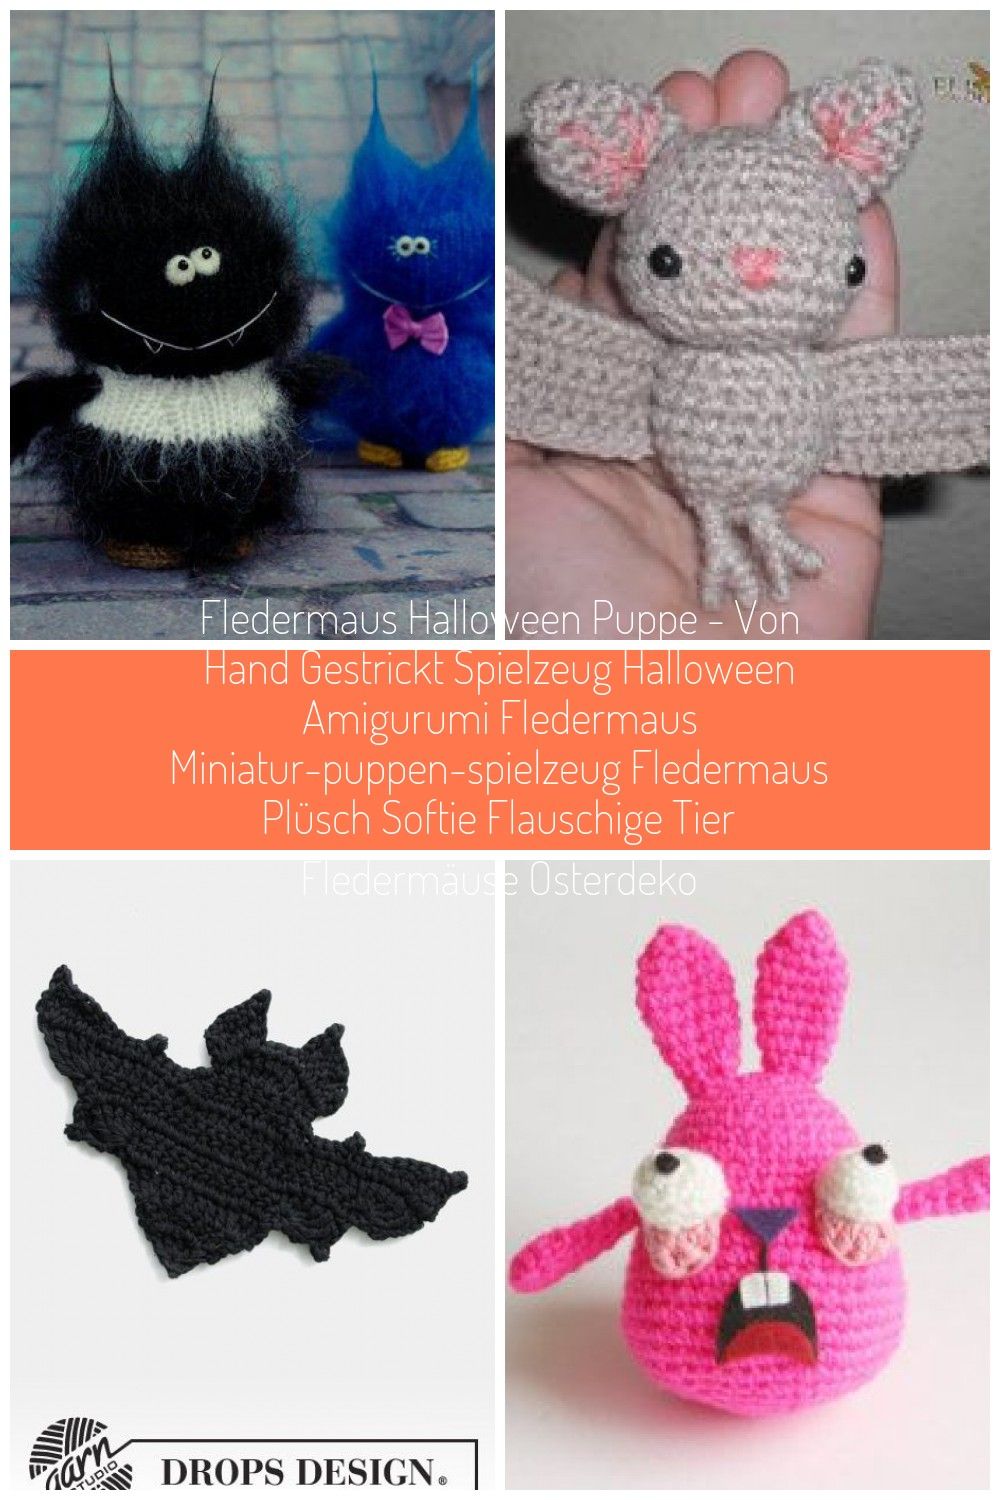 Fledermaus-Halloween-Puppe-von-Hand-gestrickt-Spielzeug-Halloween-Amigurumi.jpg